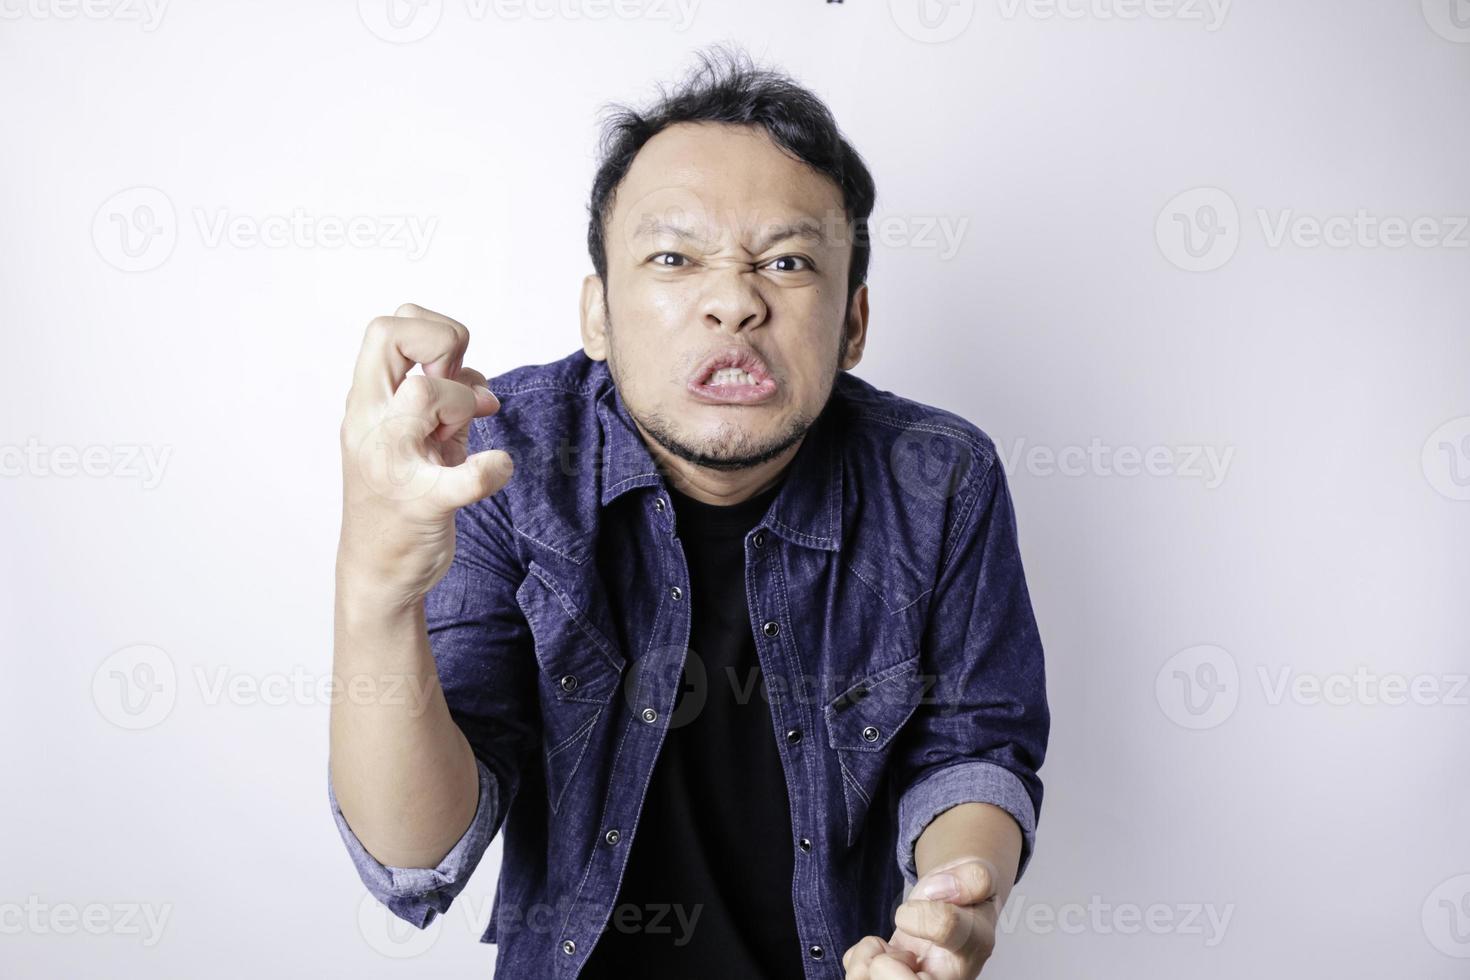 ein unzufriedener junger asiatischer mann sieht verärgert aus und trägt ein blaues marinehemd mit gereizten gesichtsausdrücken foto